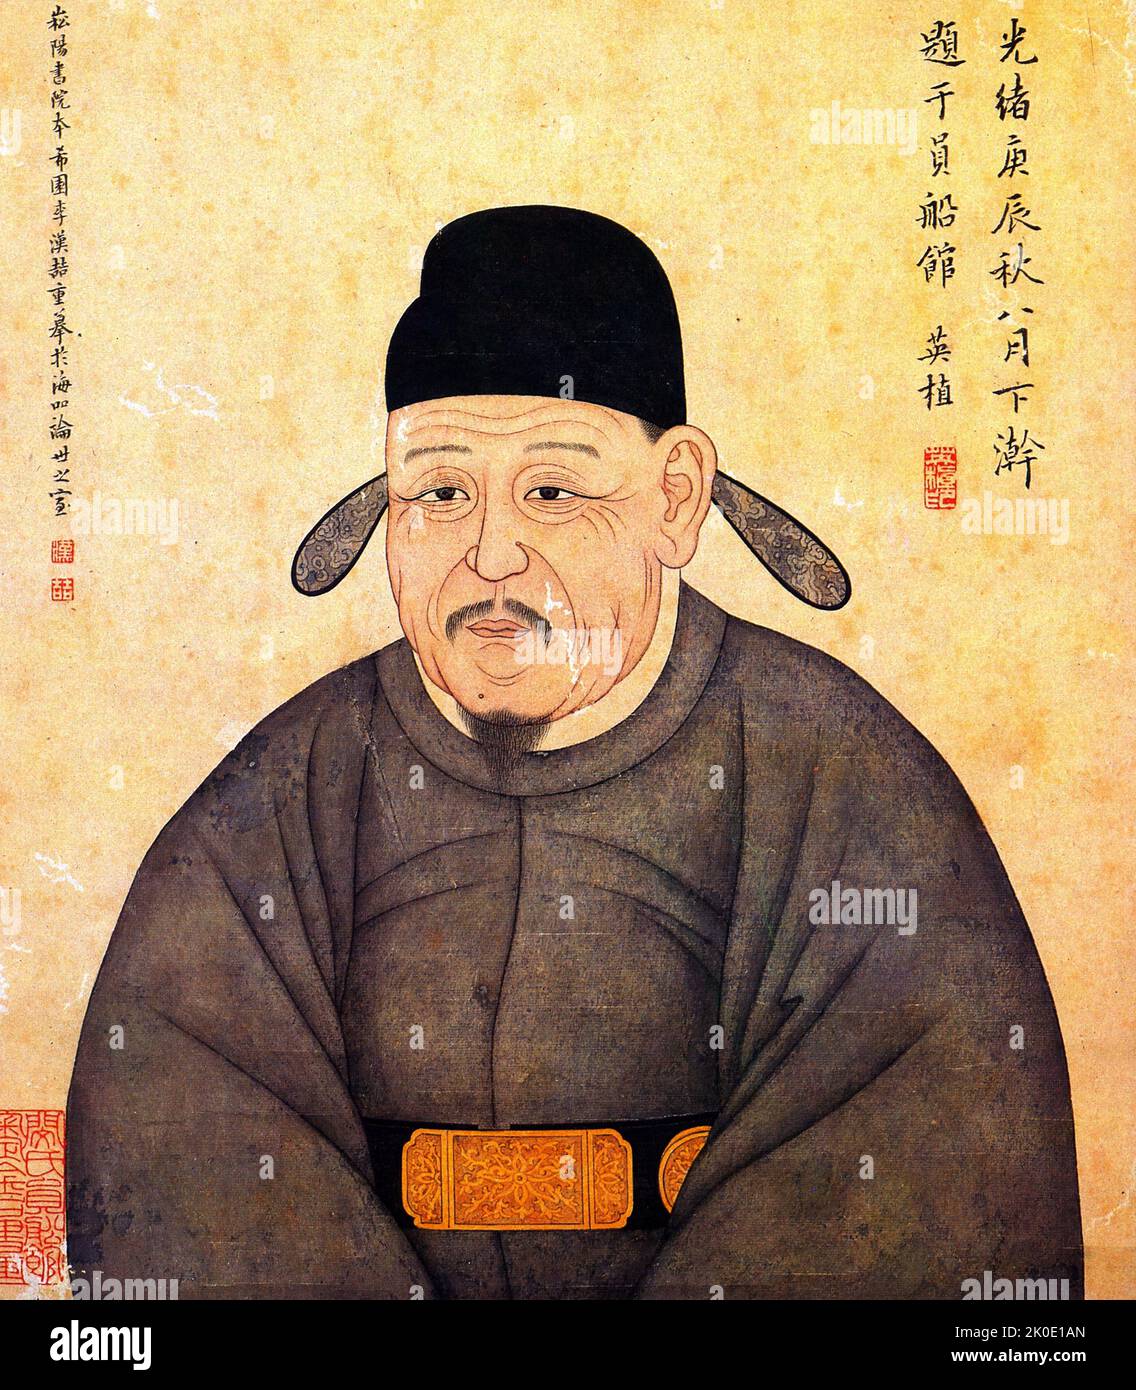 Jeong Mong-ju (1338 - 1392), auch bekannt unter seinem Pseudonym Poeun, war während der späten Goryeo-Zeit ein prominenter koreanischer Gelehrter, Beamter und Diplomat. Stockfoto